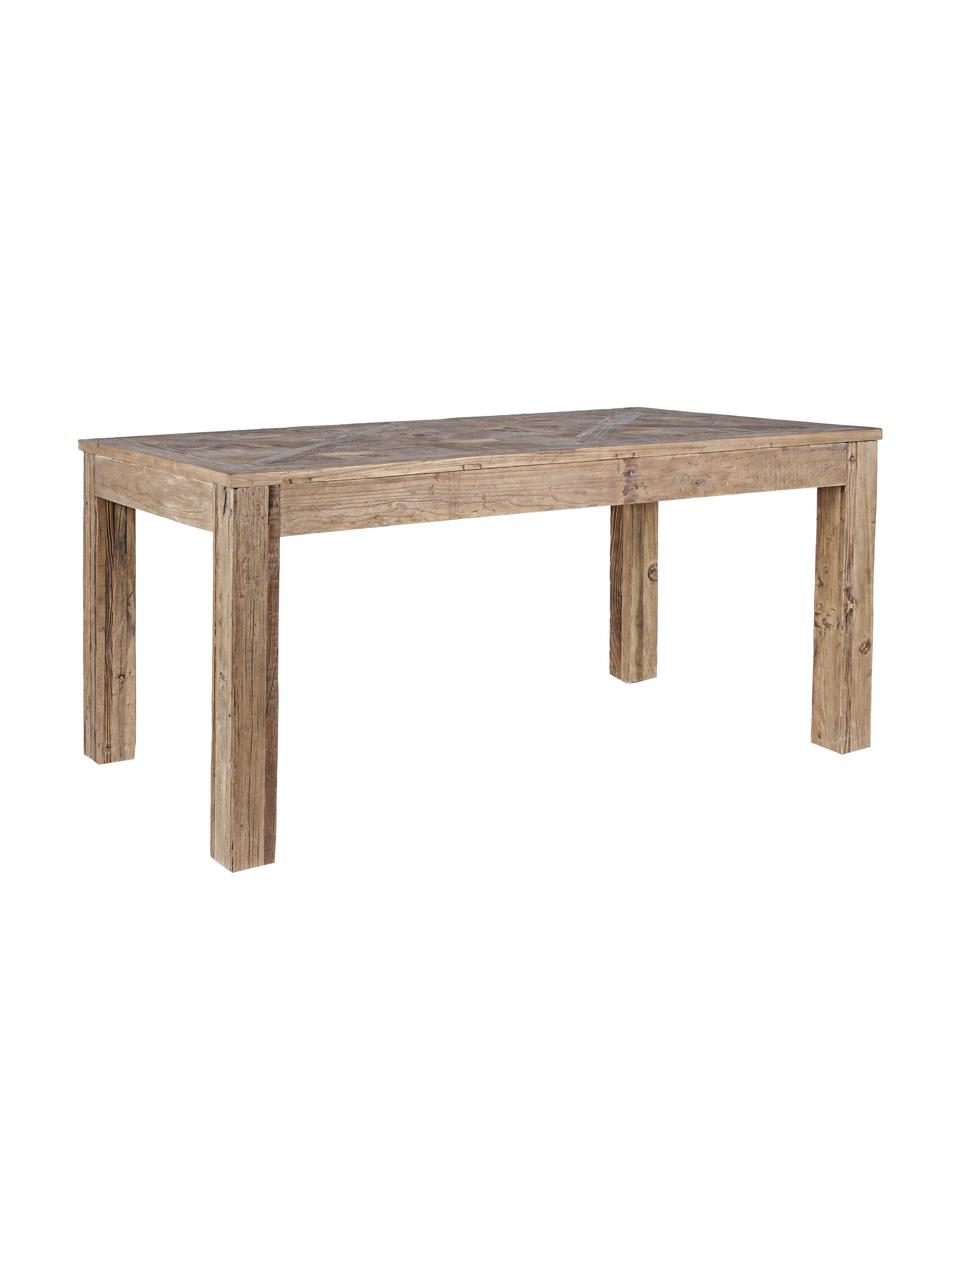 Stół do jadalni z drewna Kaily, Drewno wiązowe z recyklingu z antycznym wykończeniem, Beżowy, S 160 x G 90 cm